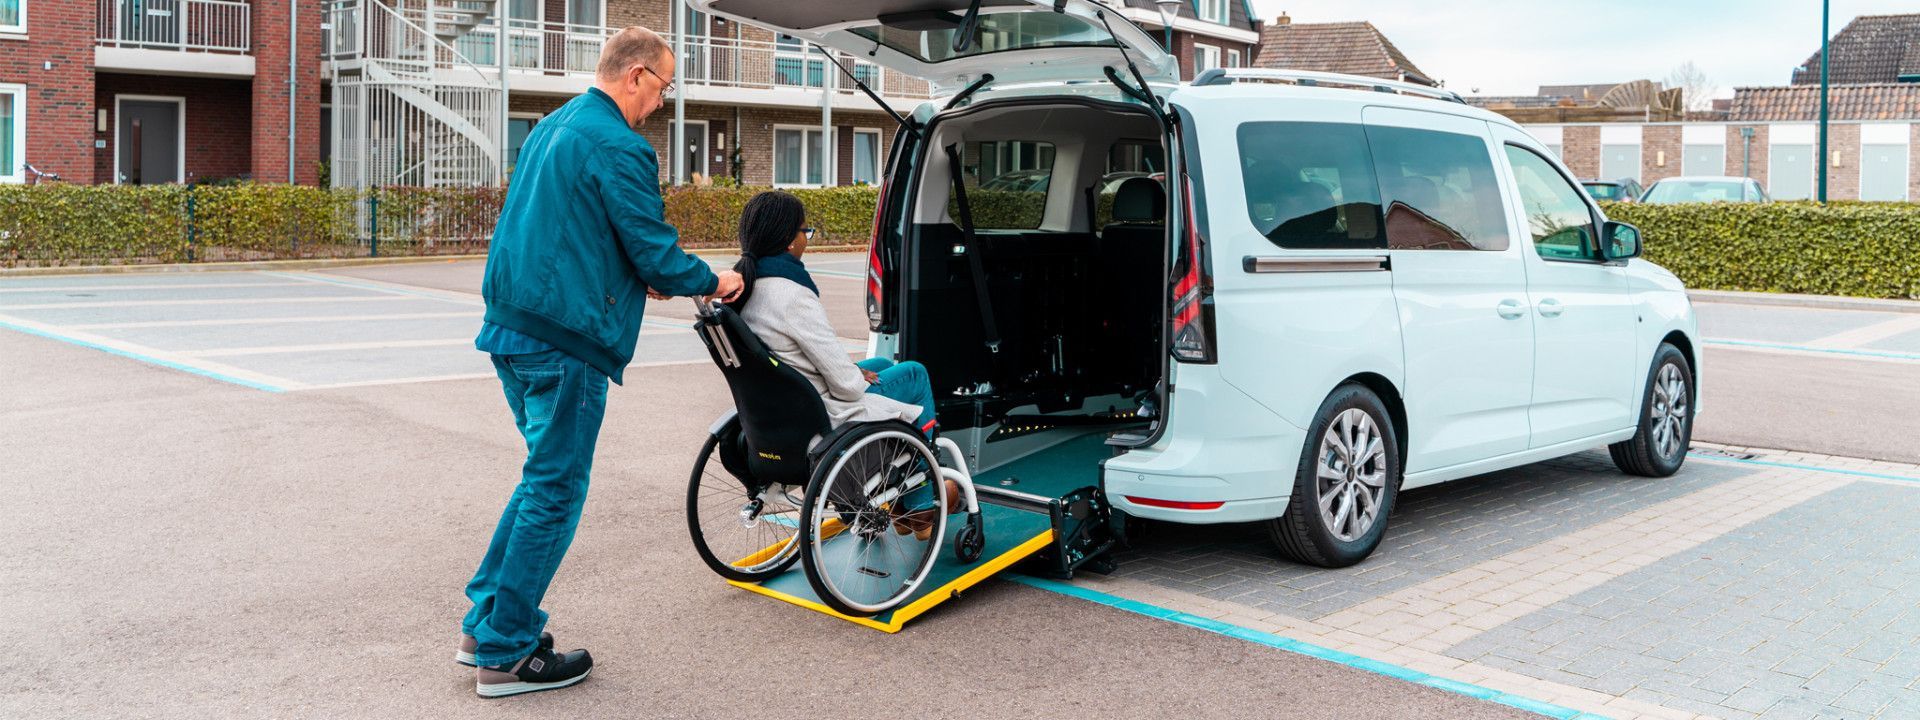 Foto: Renault Kangoo attrezzato per l'utilizzo su sedia a rotelle